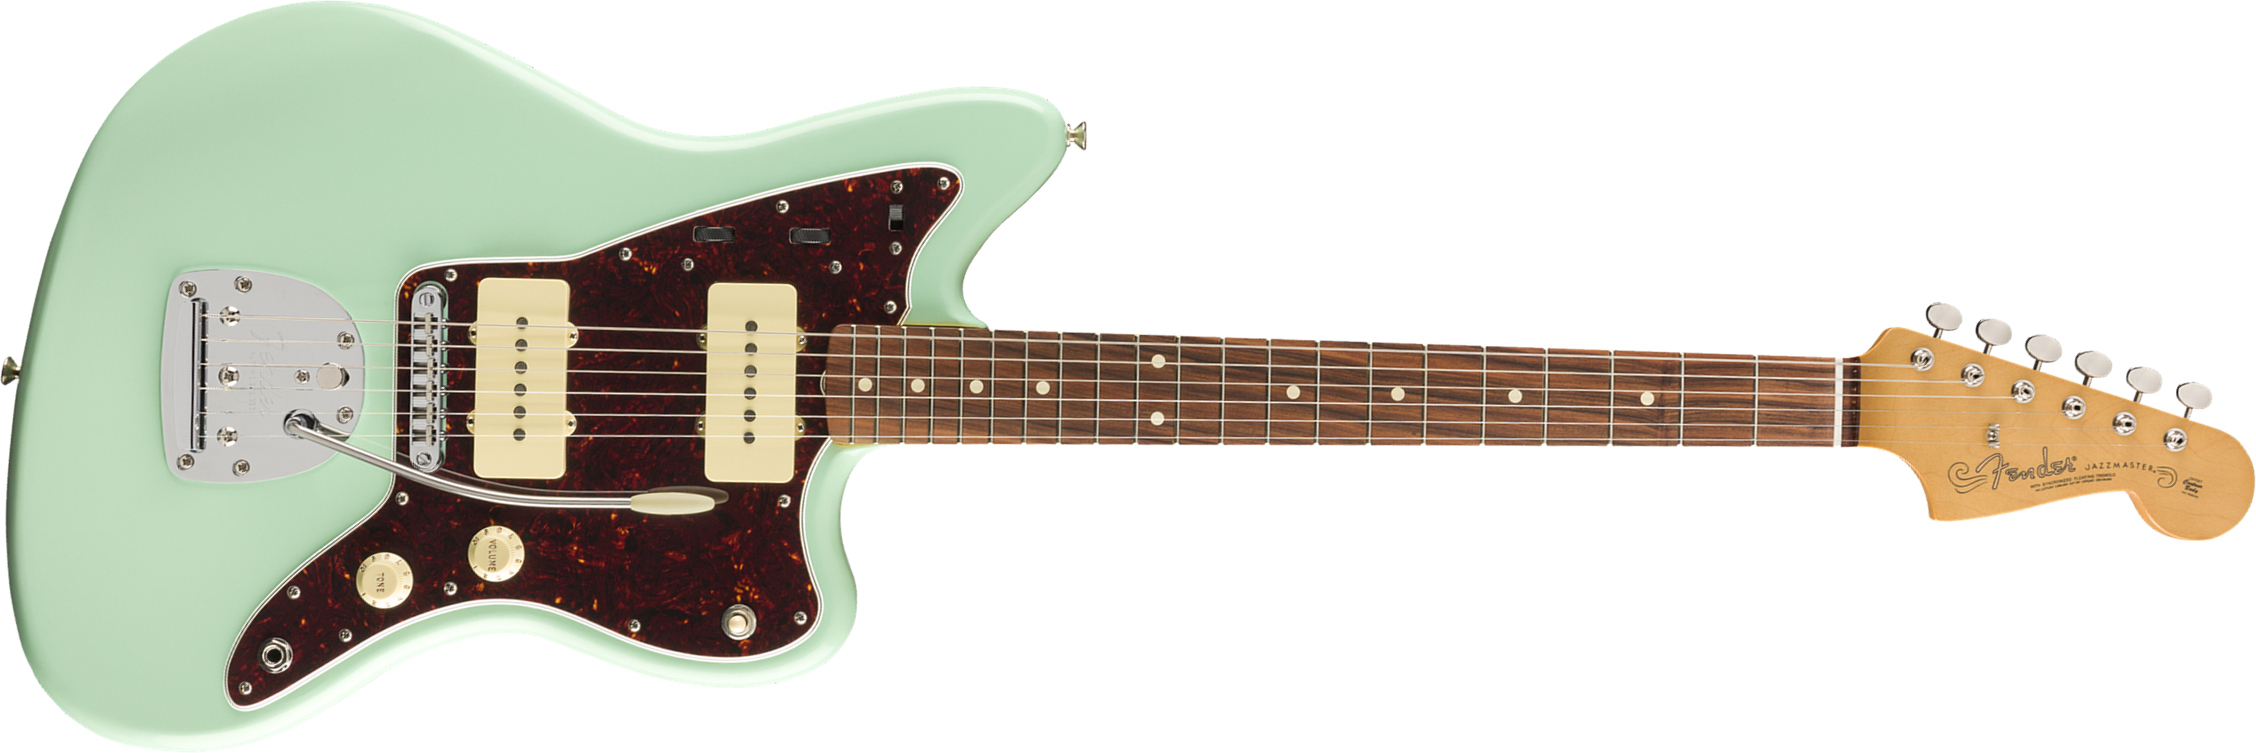 Fender Jazzmaster 60s Vintera Modified Mex Pf - Surf Green - Retro-rock elektrische gitaar - Main picture